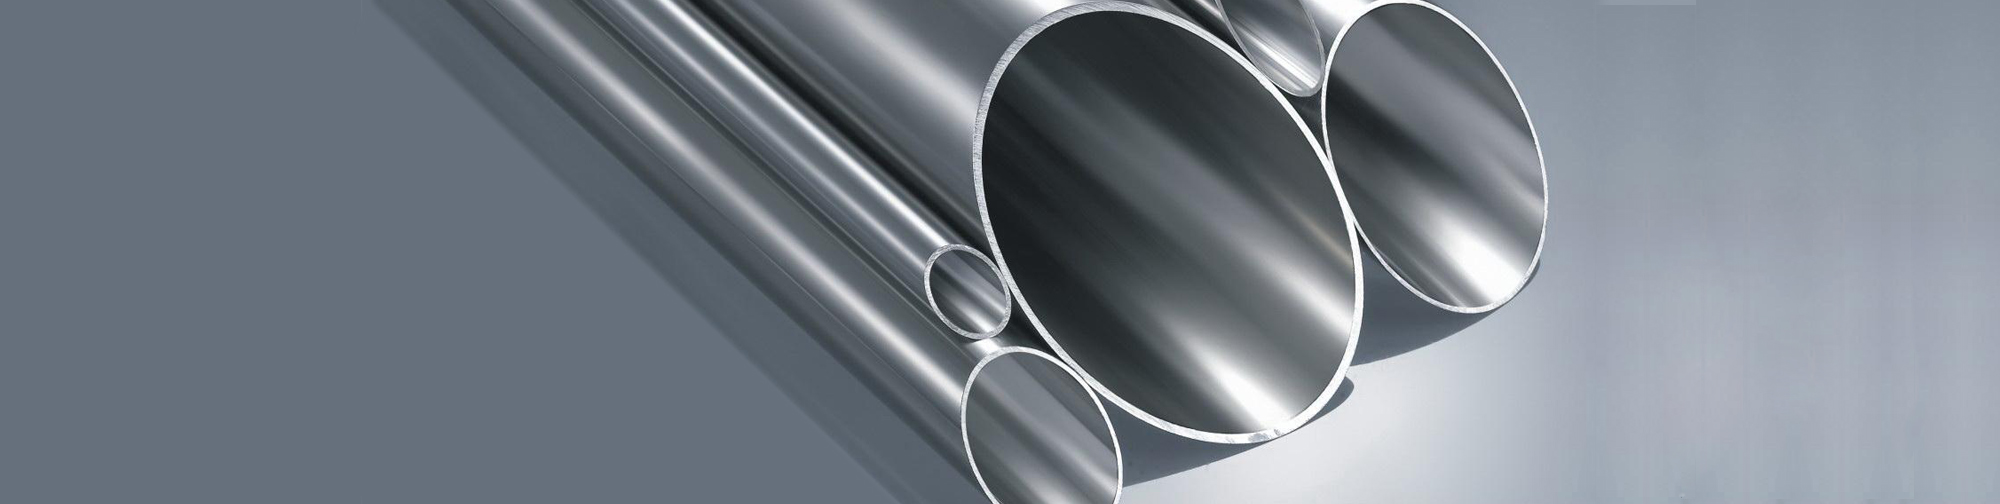 不锈钢水池与铝合金材质相比纯铝有什么特点